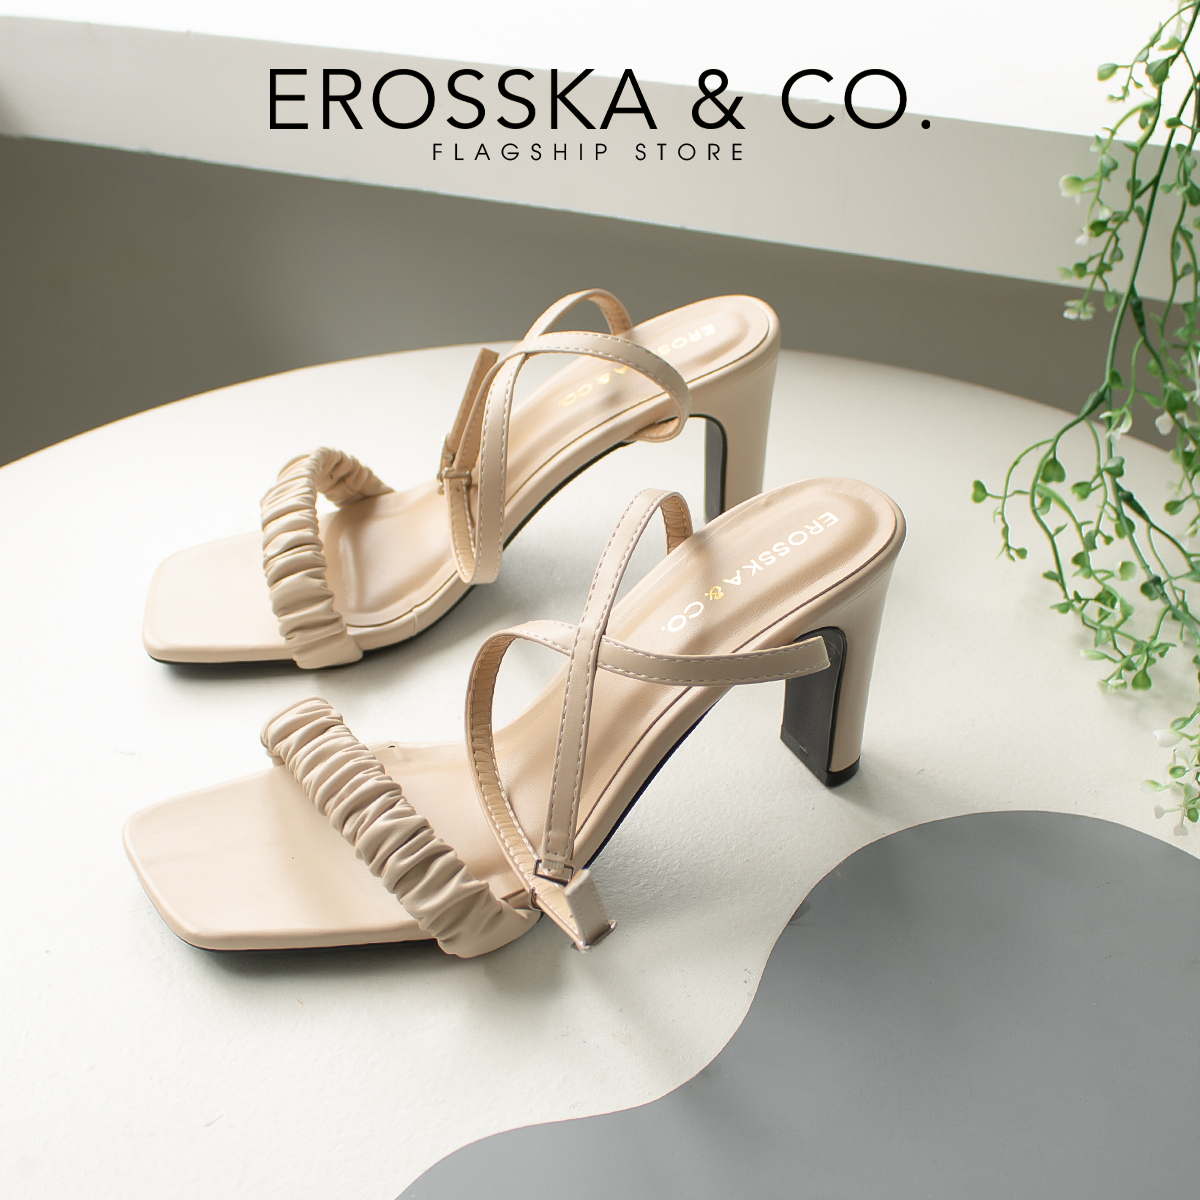 Erosska - Giày sandal cao gót nữ mũi vuông quai nhún cao 8cm màu nude - EB044